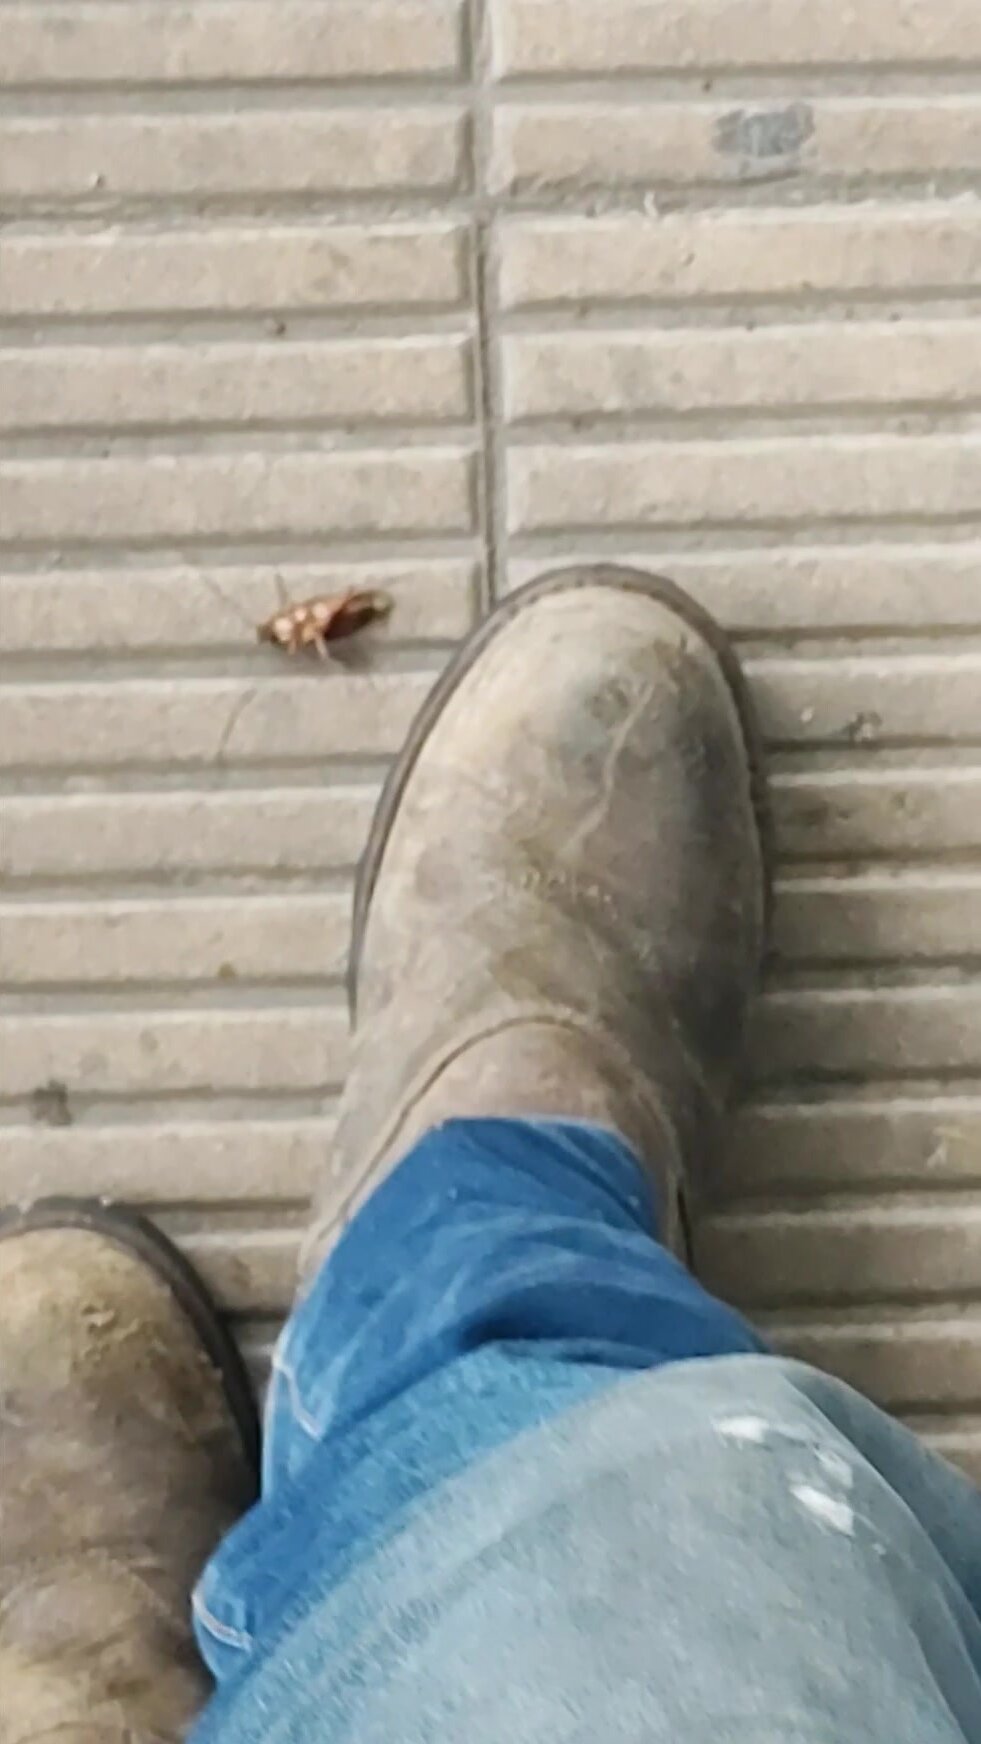 Cockroach under my Ariat work boots